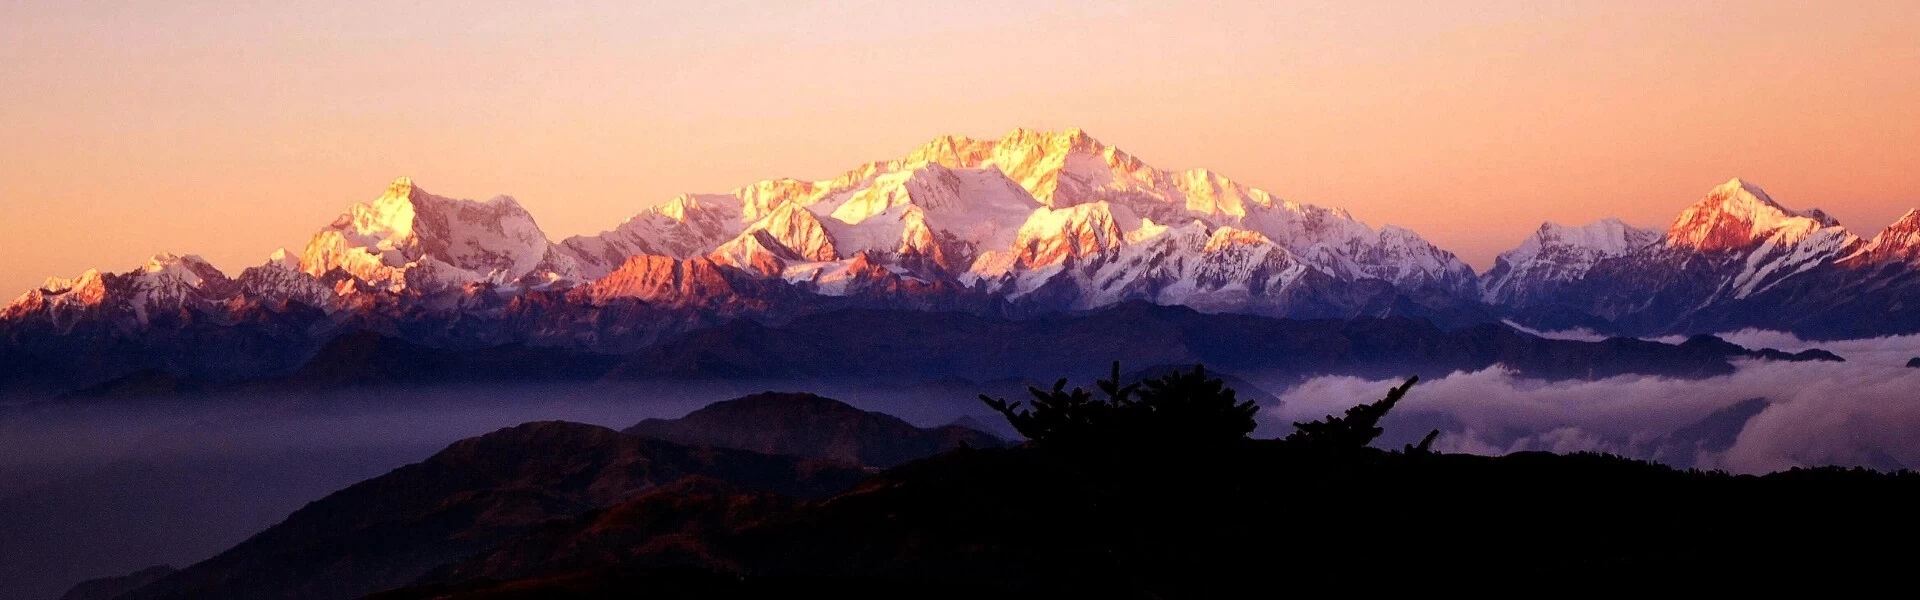 kanchenjunga-region-nepal.jpg